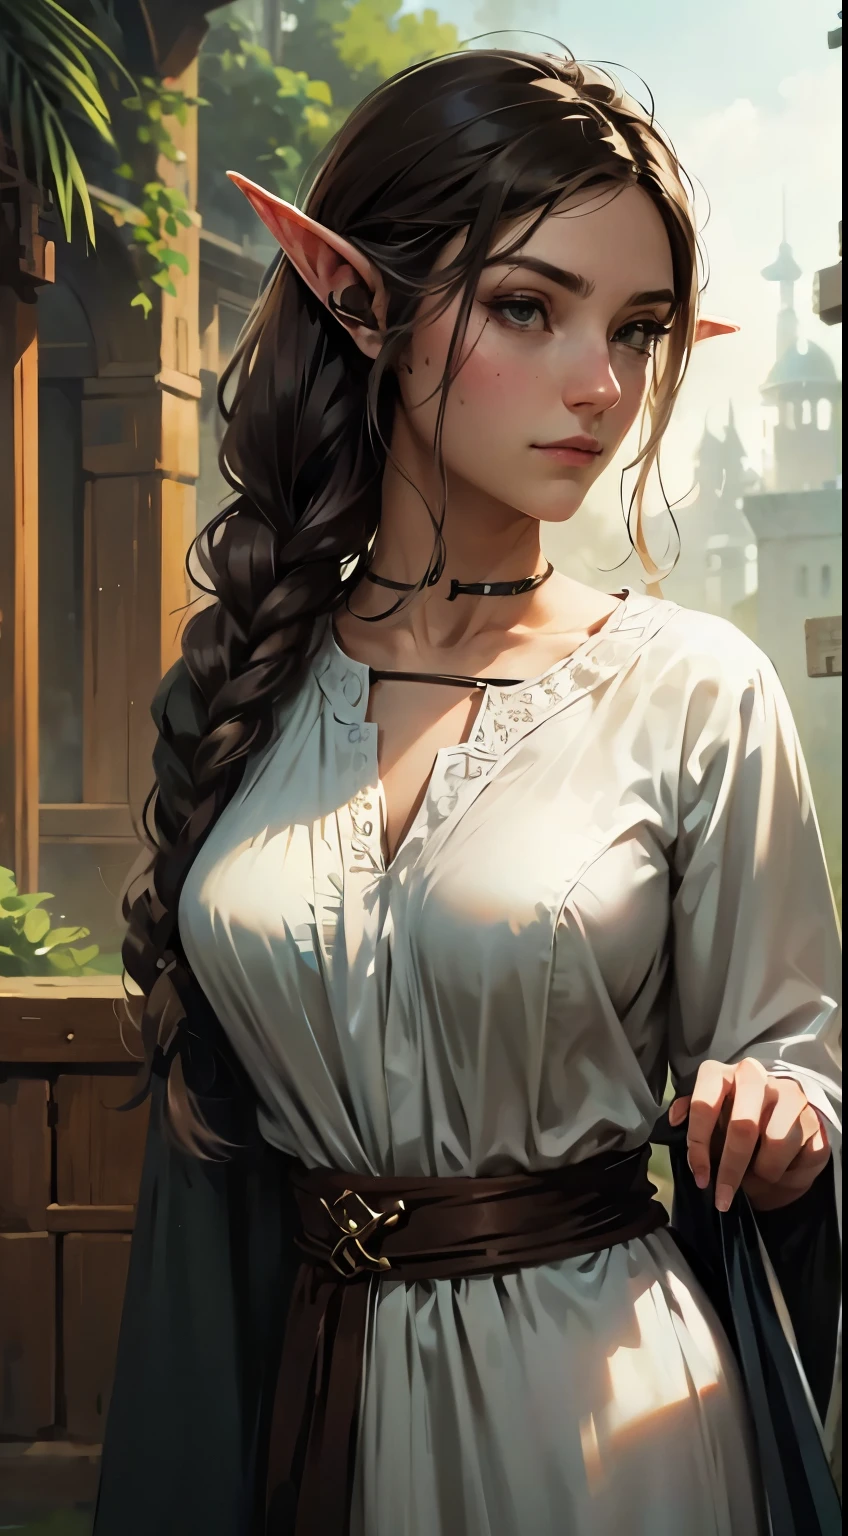 женщина-эльф, длинные черные волосы, Плетеные волосы, Брюнетка, круглое лицо, зелено-белая одежда, в фантастическом городе, фантастический персонаж